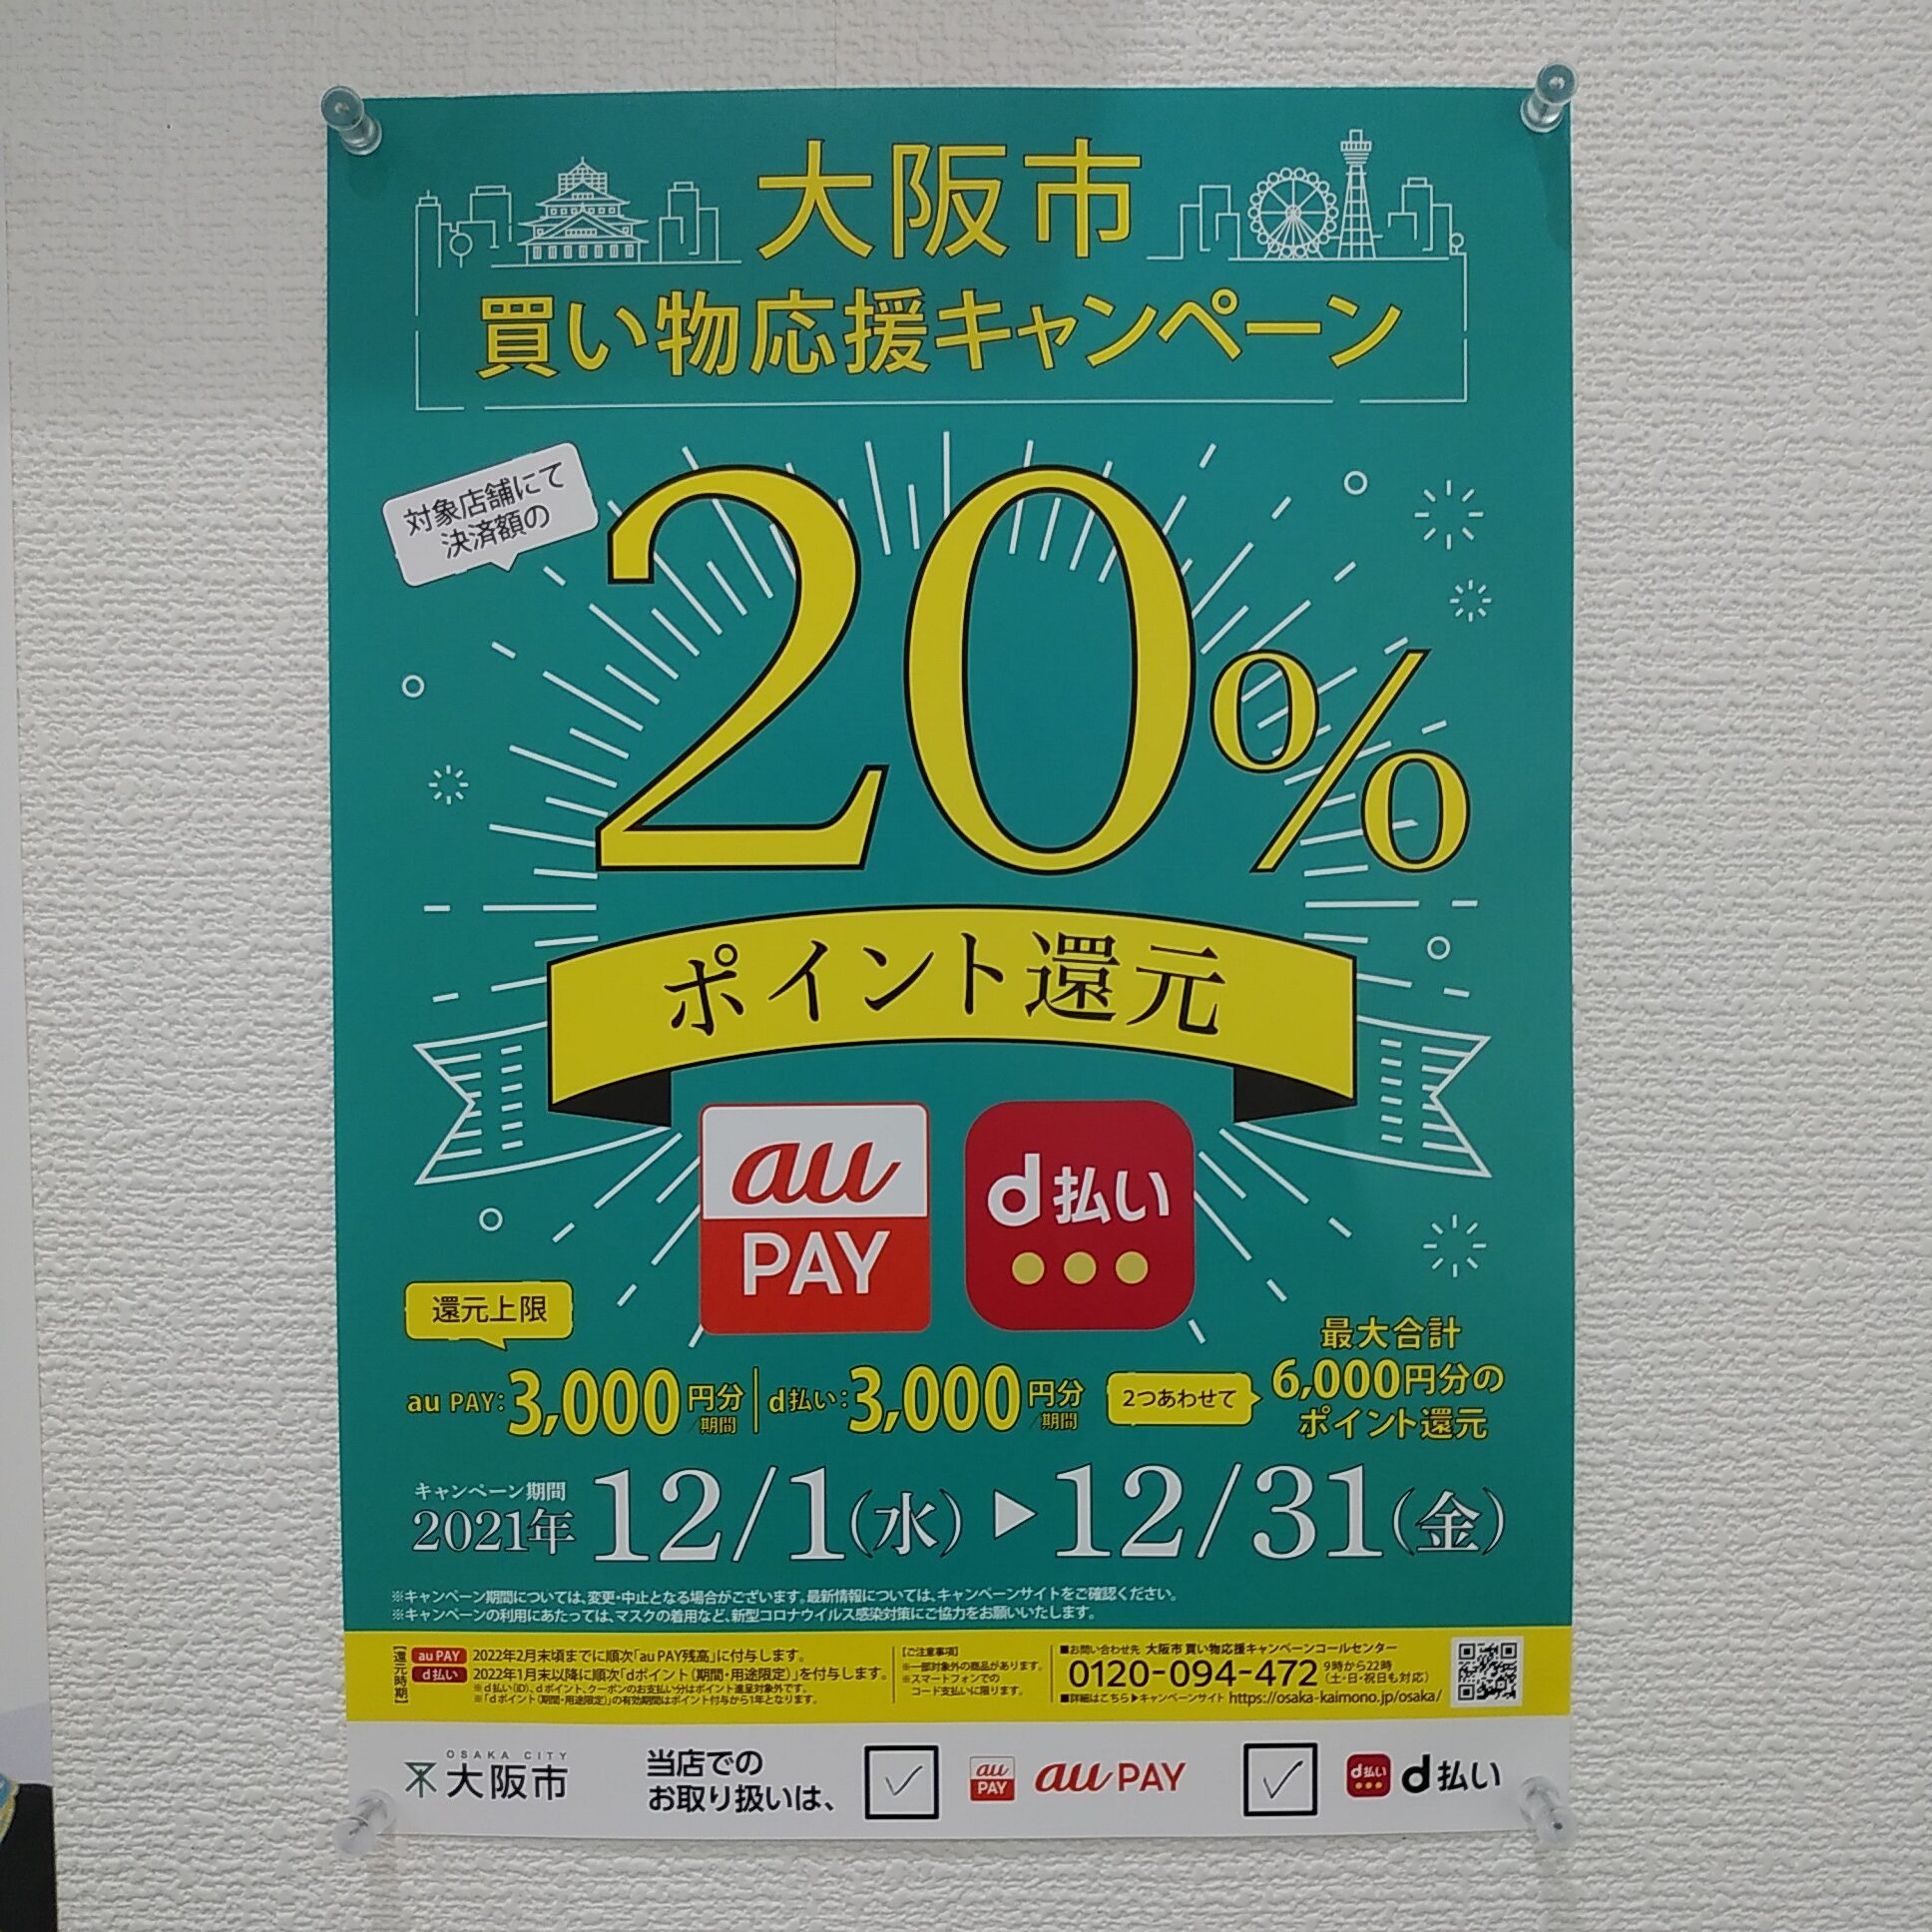 大阪市買い物応援キャンペーン順調です！のサムネイル画像